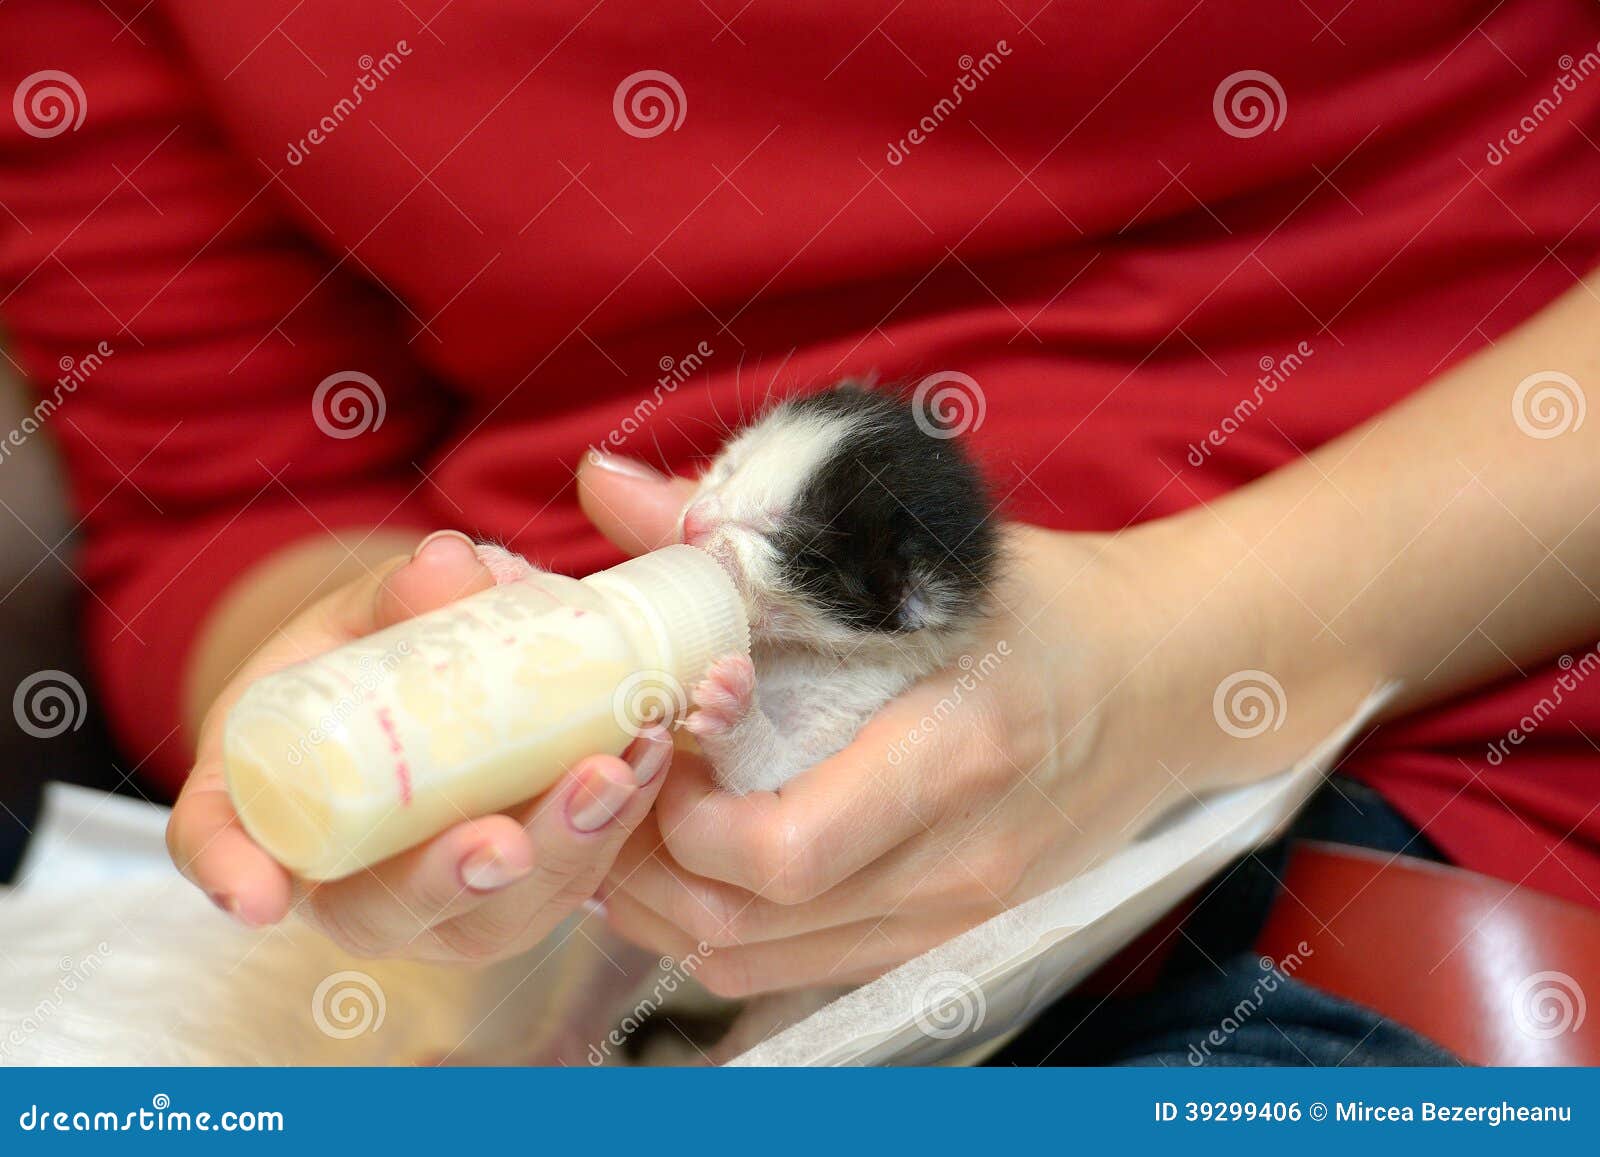 orphan kitten drinking milk